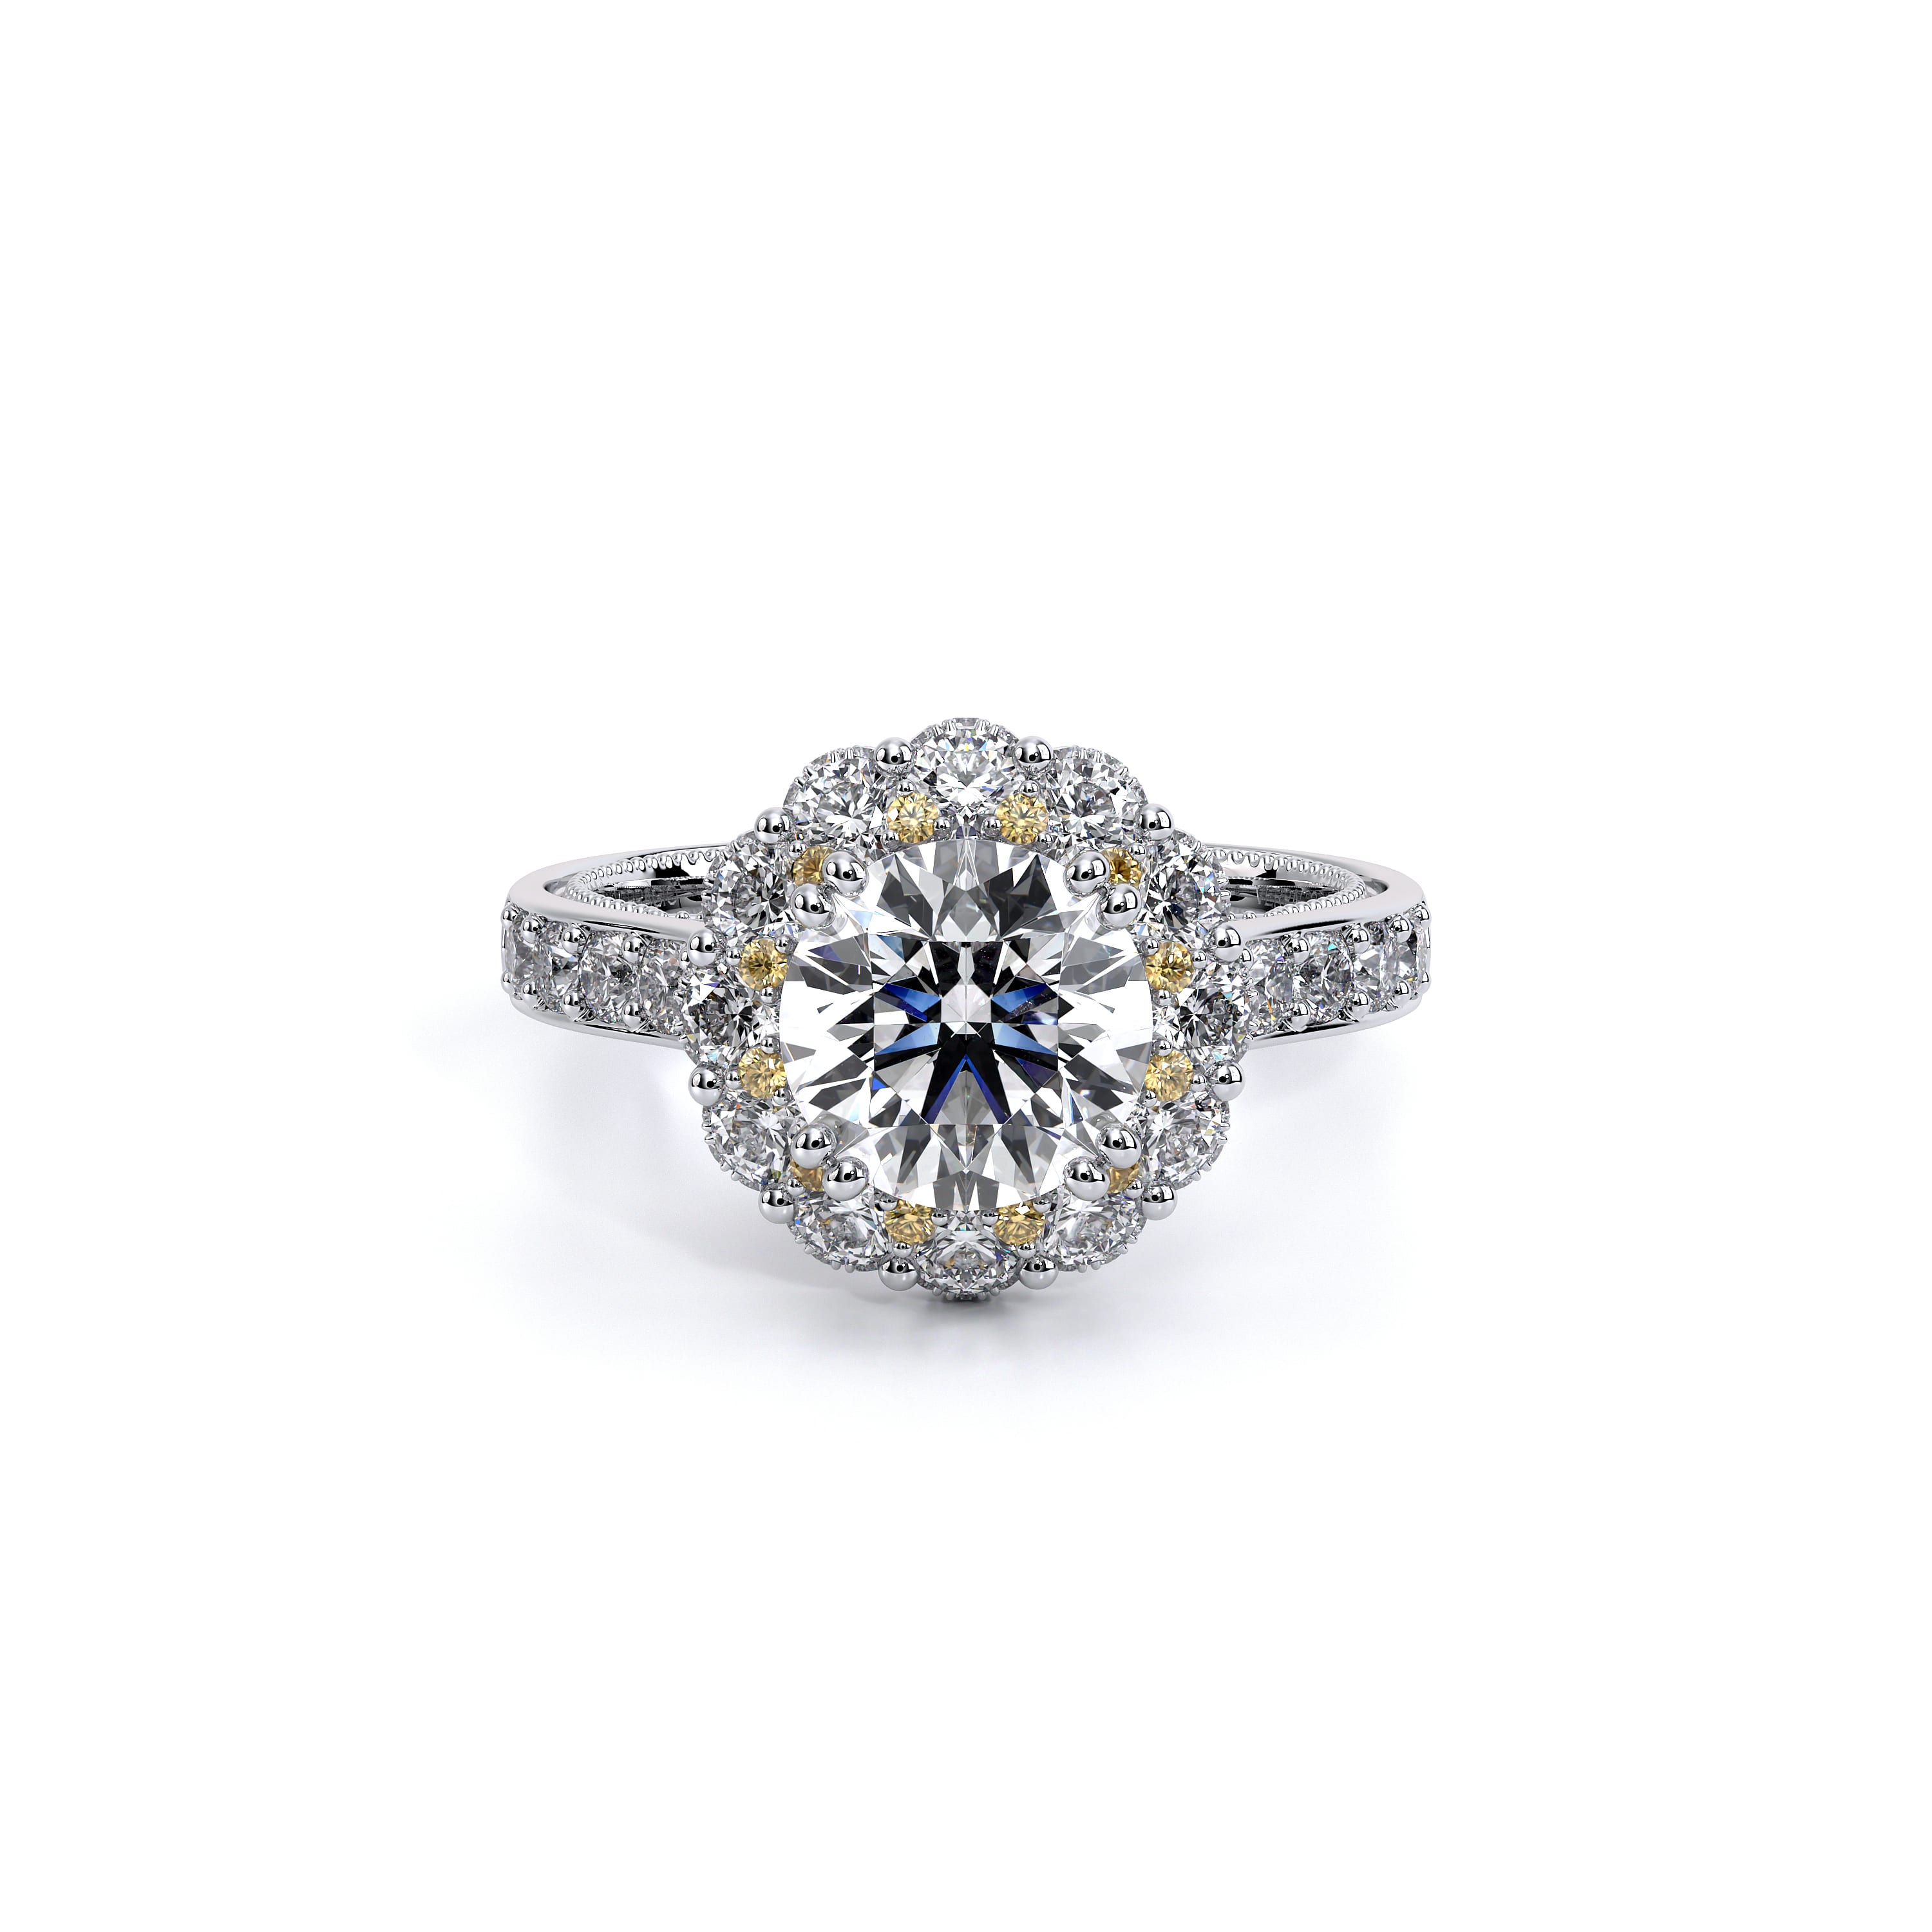 Verragio Insignia Collection Diamond Engagement Ring 2.5 ctw